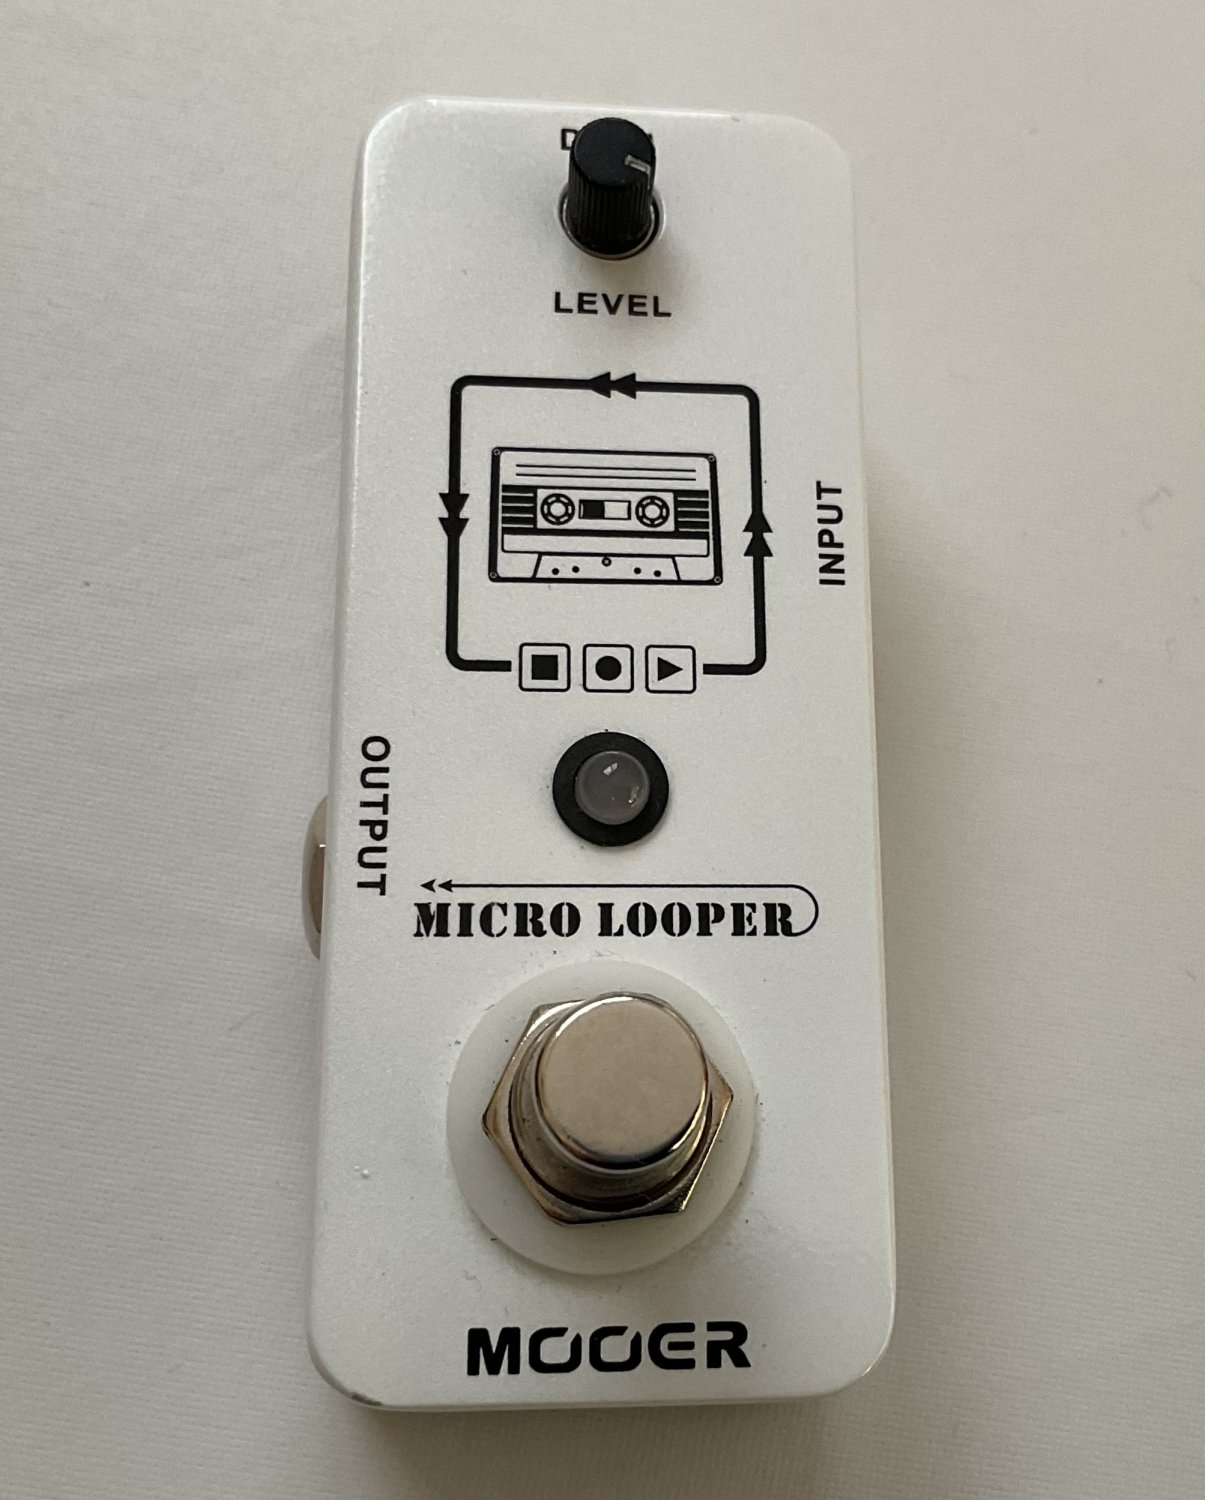 MOOER Micro Looper - Mini pédale d'effet type enregistreur-répétiteur